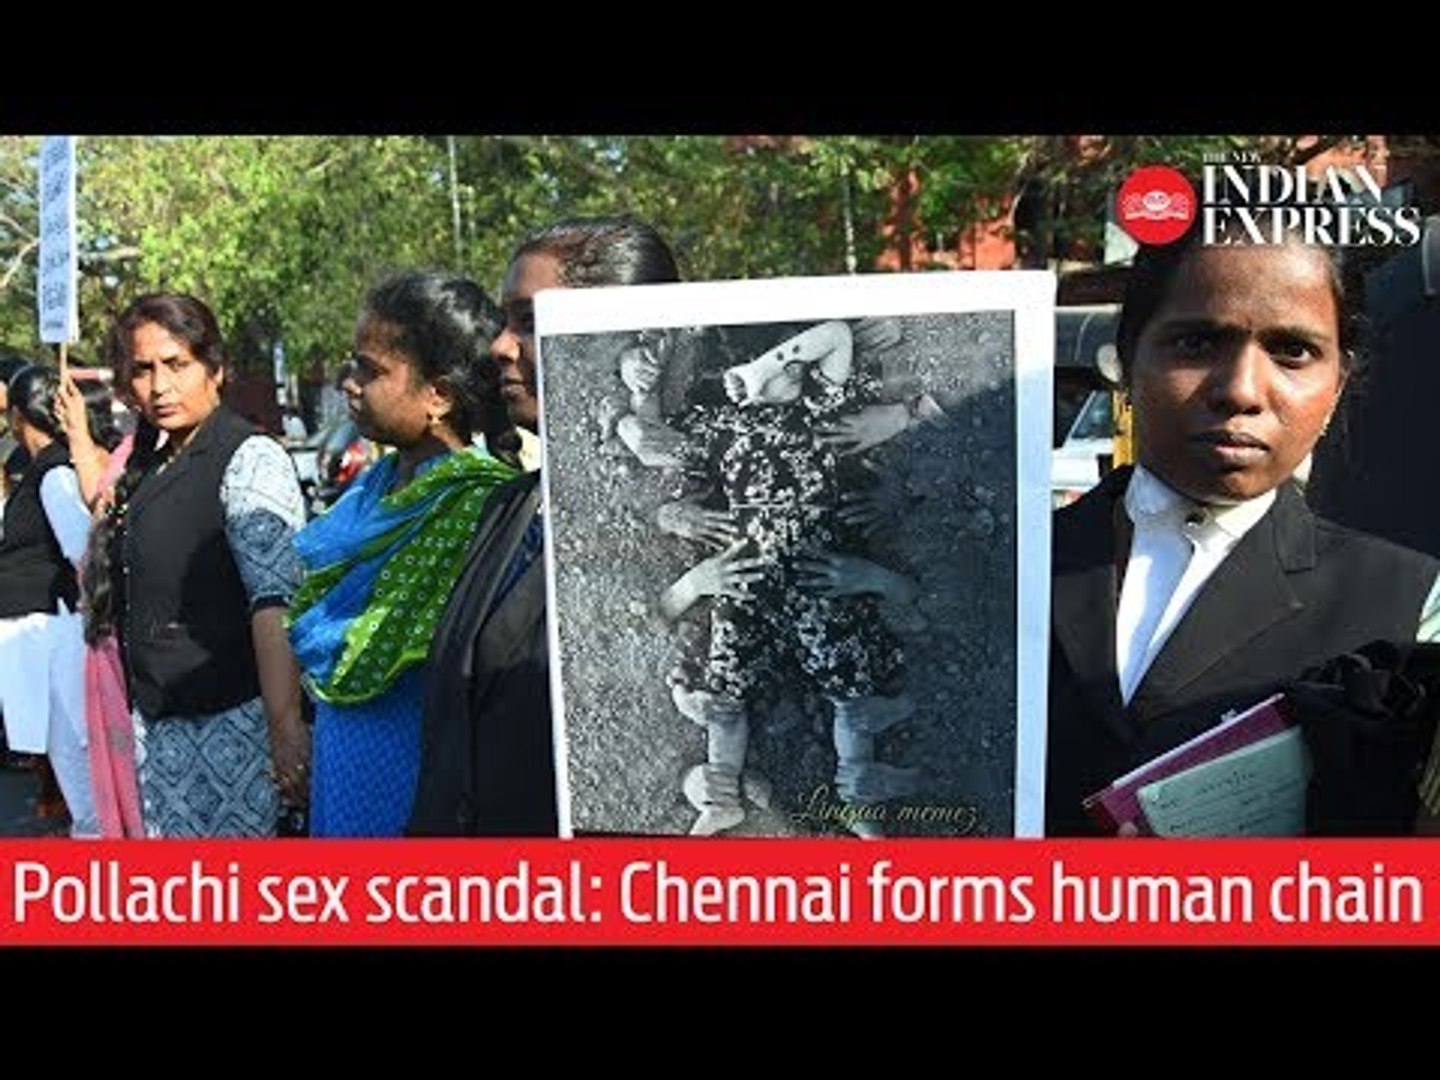 Sex in Chennai facial and Chennai: Sex